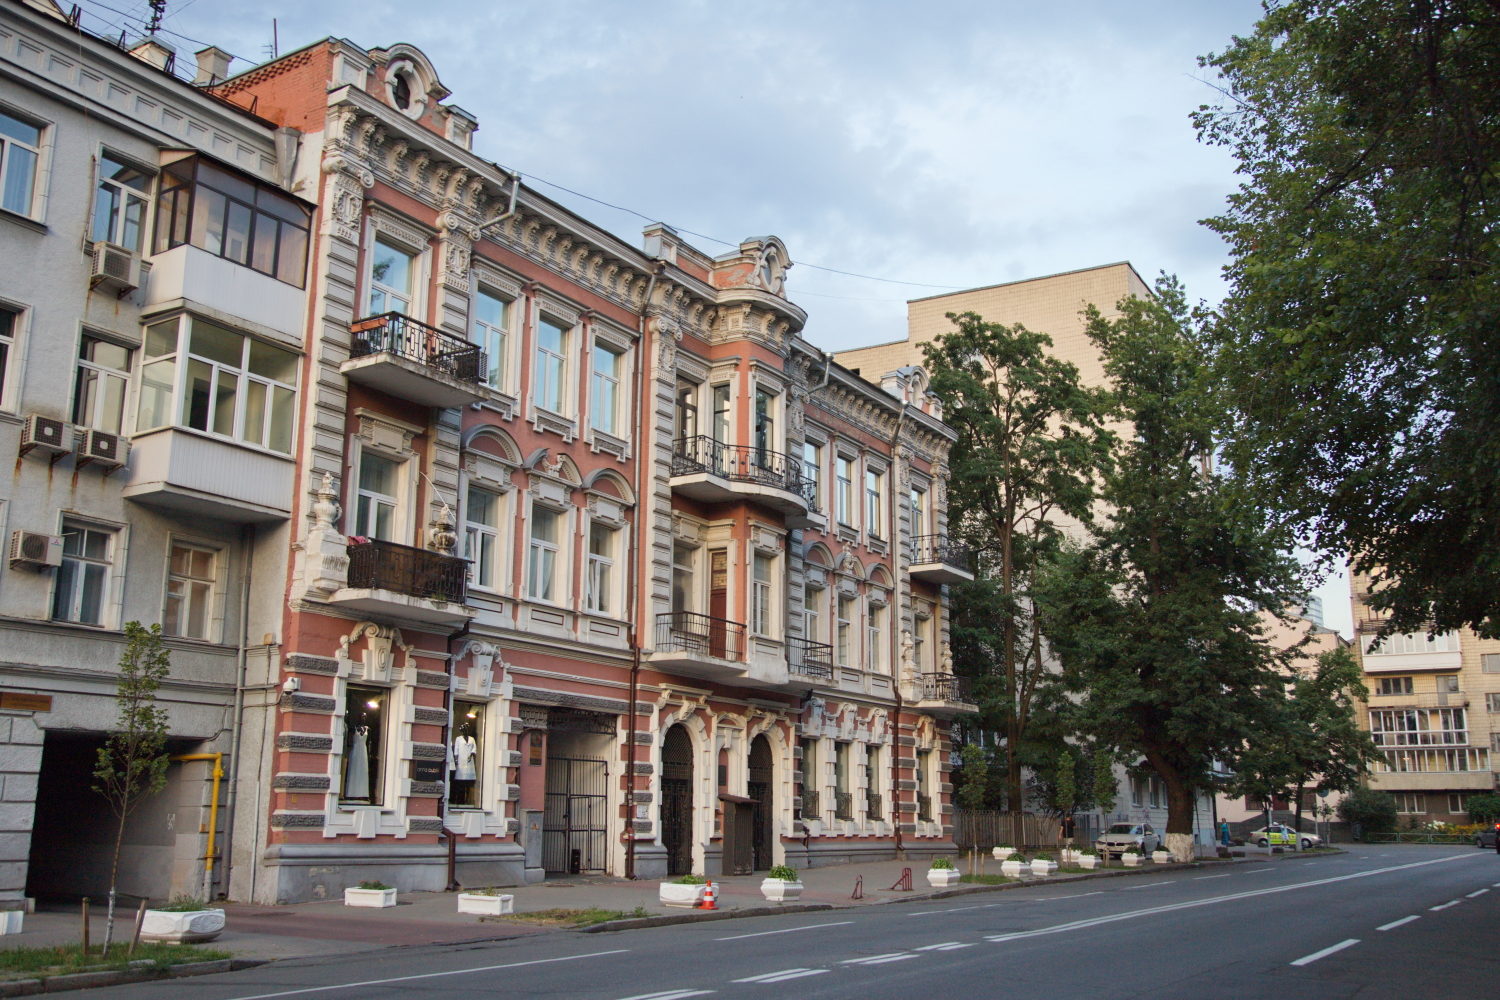 Улица Лютеранская, 33 – дом, в котором жил Константин Паустовский